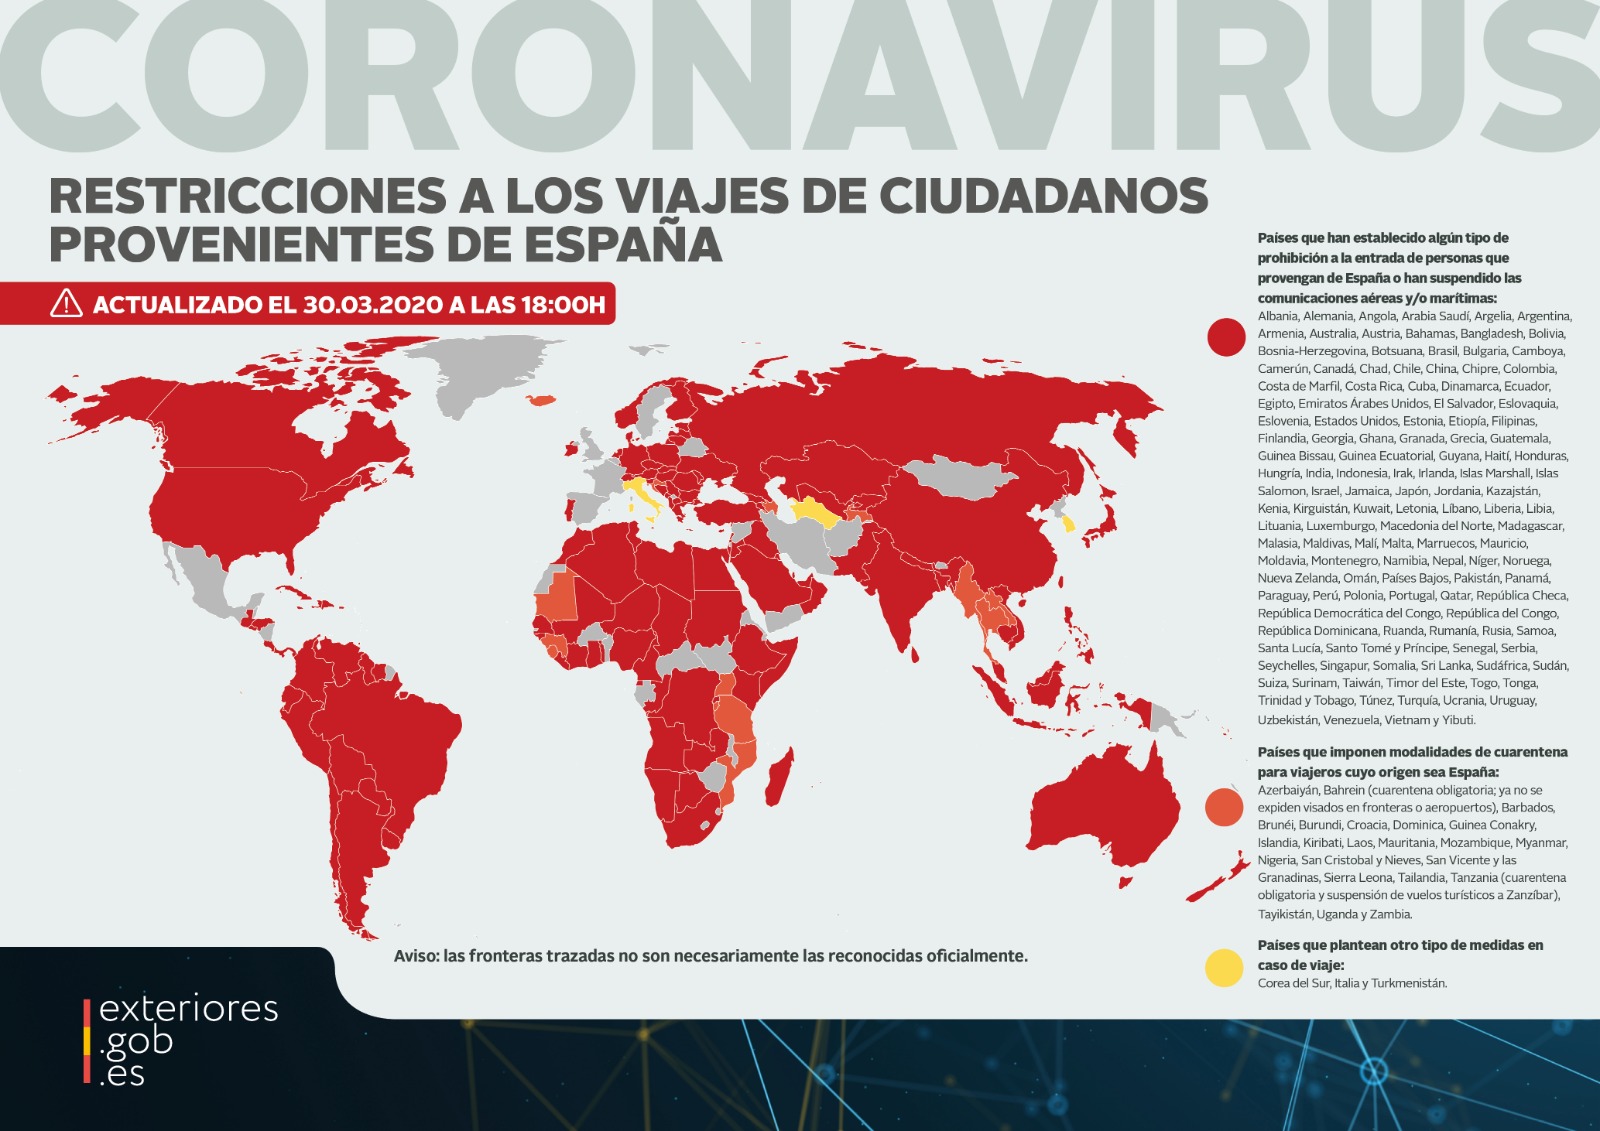 Coronavirus en España: Cómo afecta al viajero - General Forum Spain